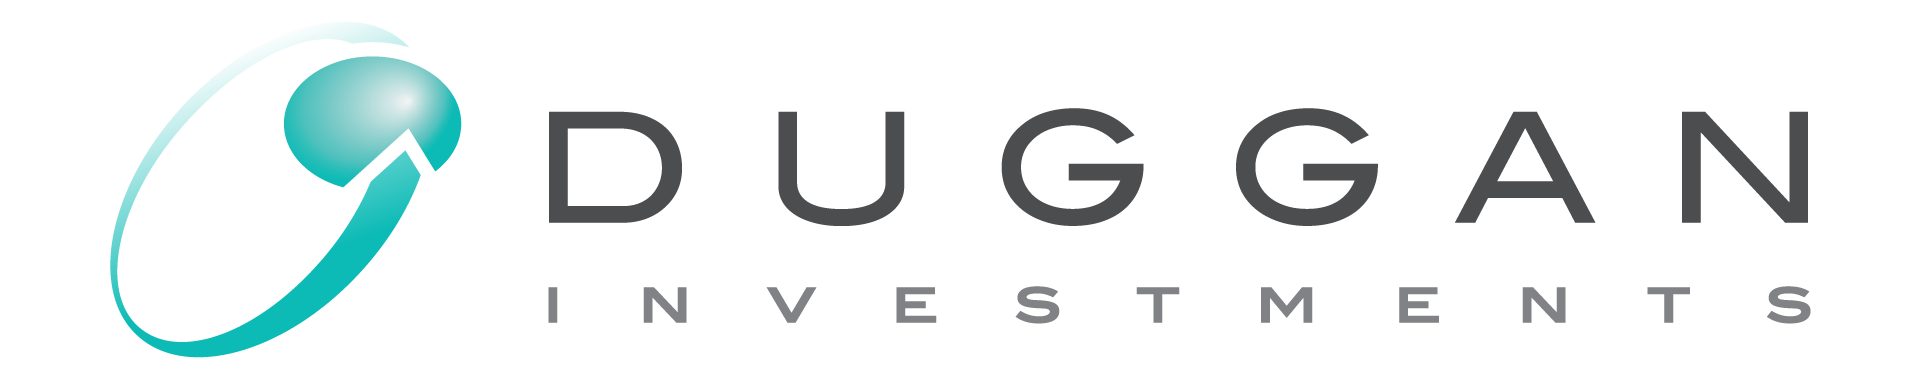 Duggan Investments